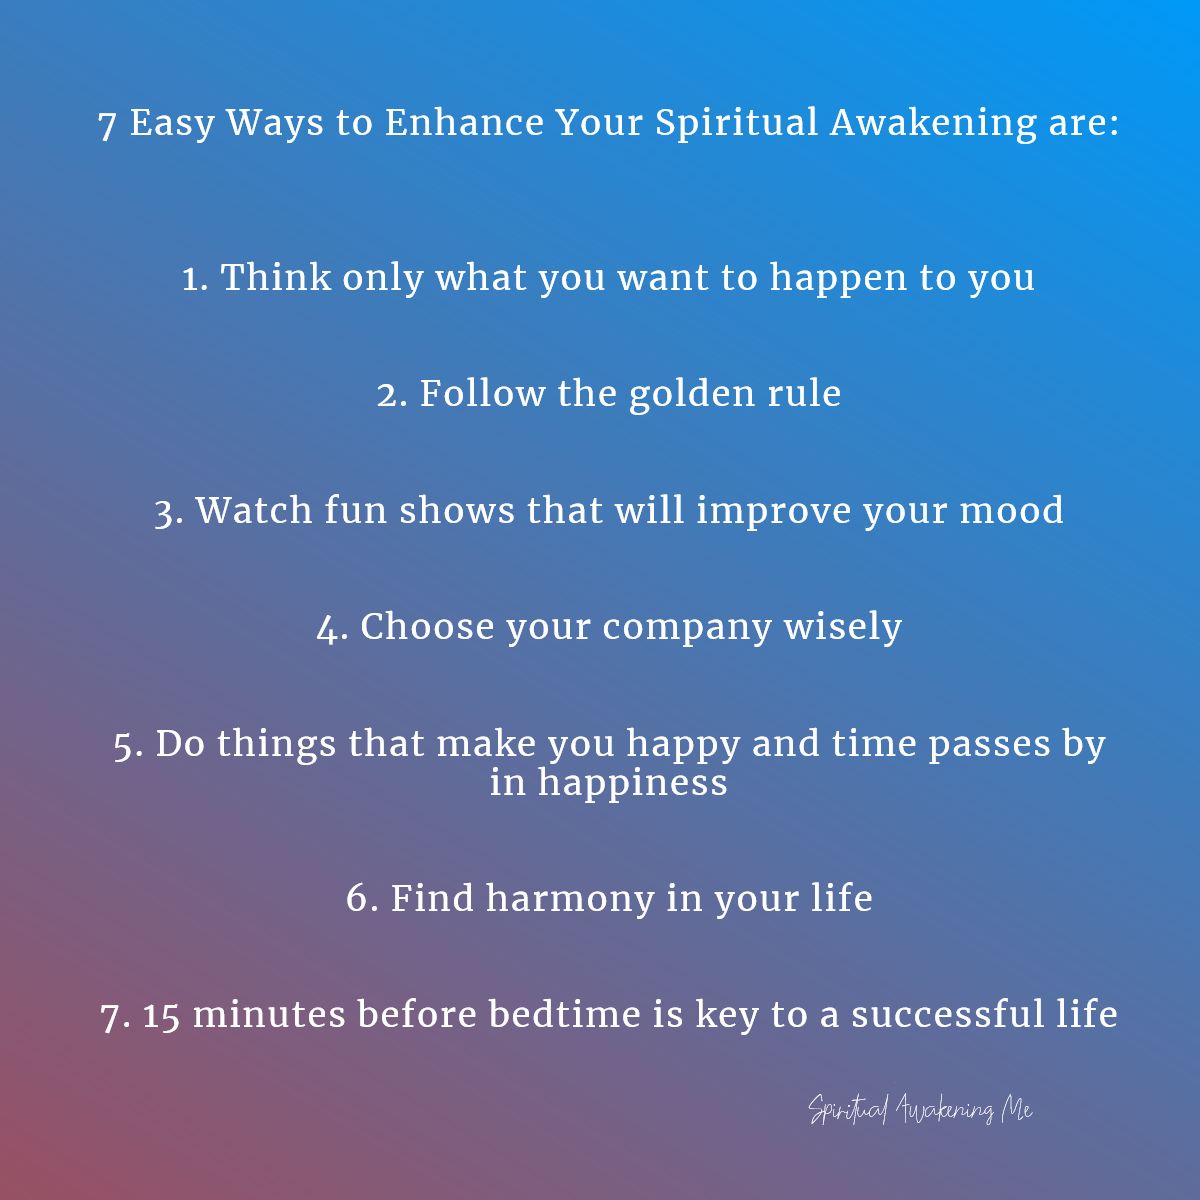 7 Easy Ways to Improve Your Spiritual Awakening: So Easy